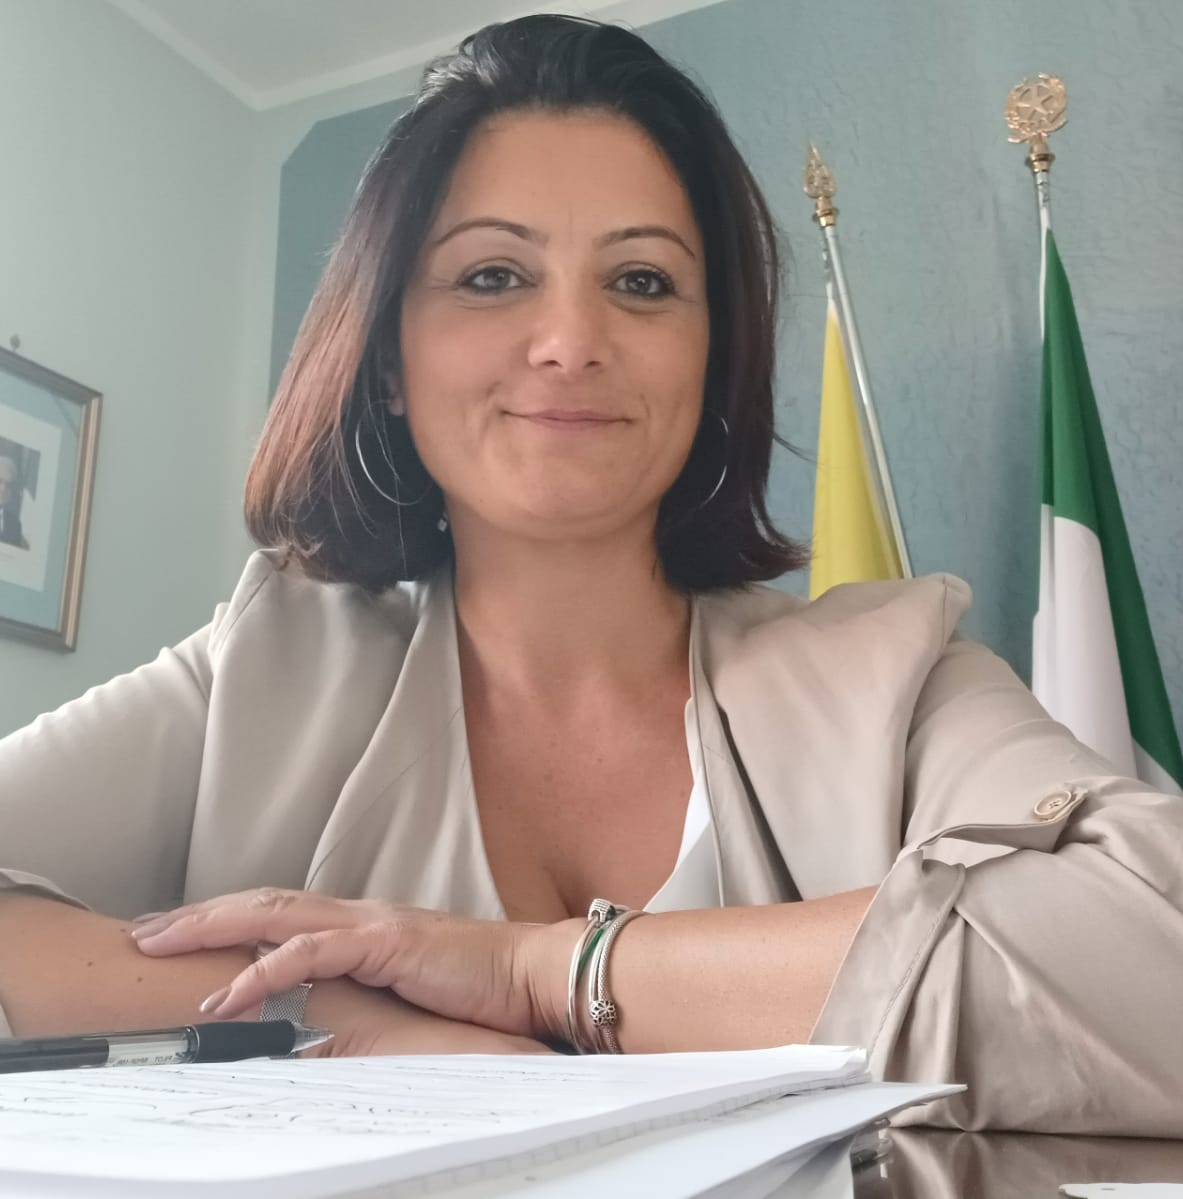 Qualità vita, Alfano (FdI): “Provincia di Salerno agli ultimi posti, è il momento del cambiamento”